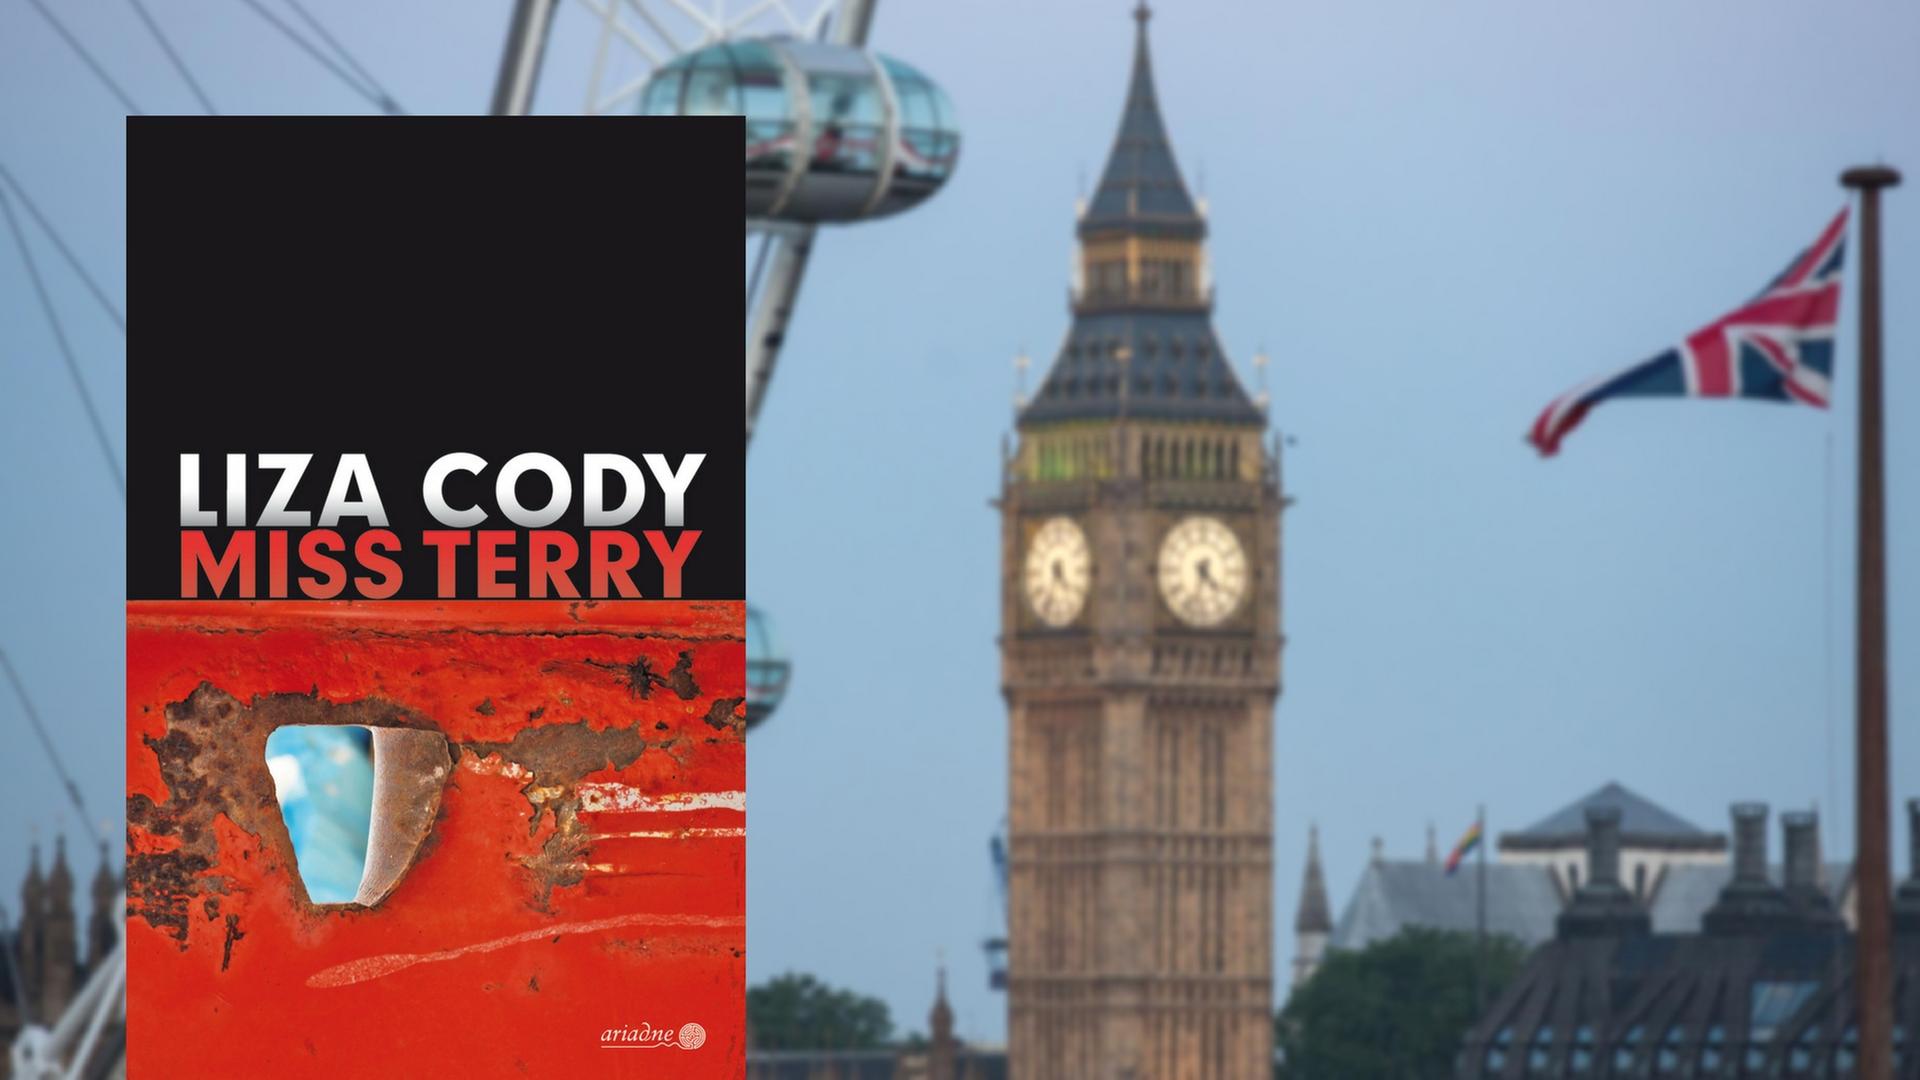 Buchcover "Miss Terry" von Liza Cody. Im Hintergrund das Londoner Wahrzeichen Big Ben.